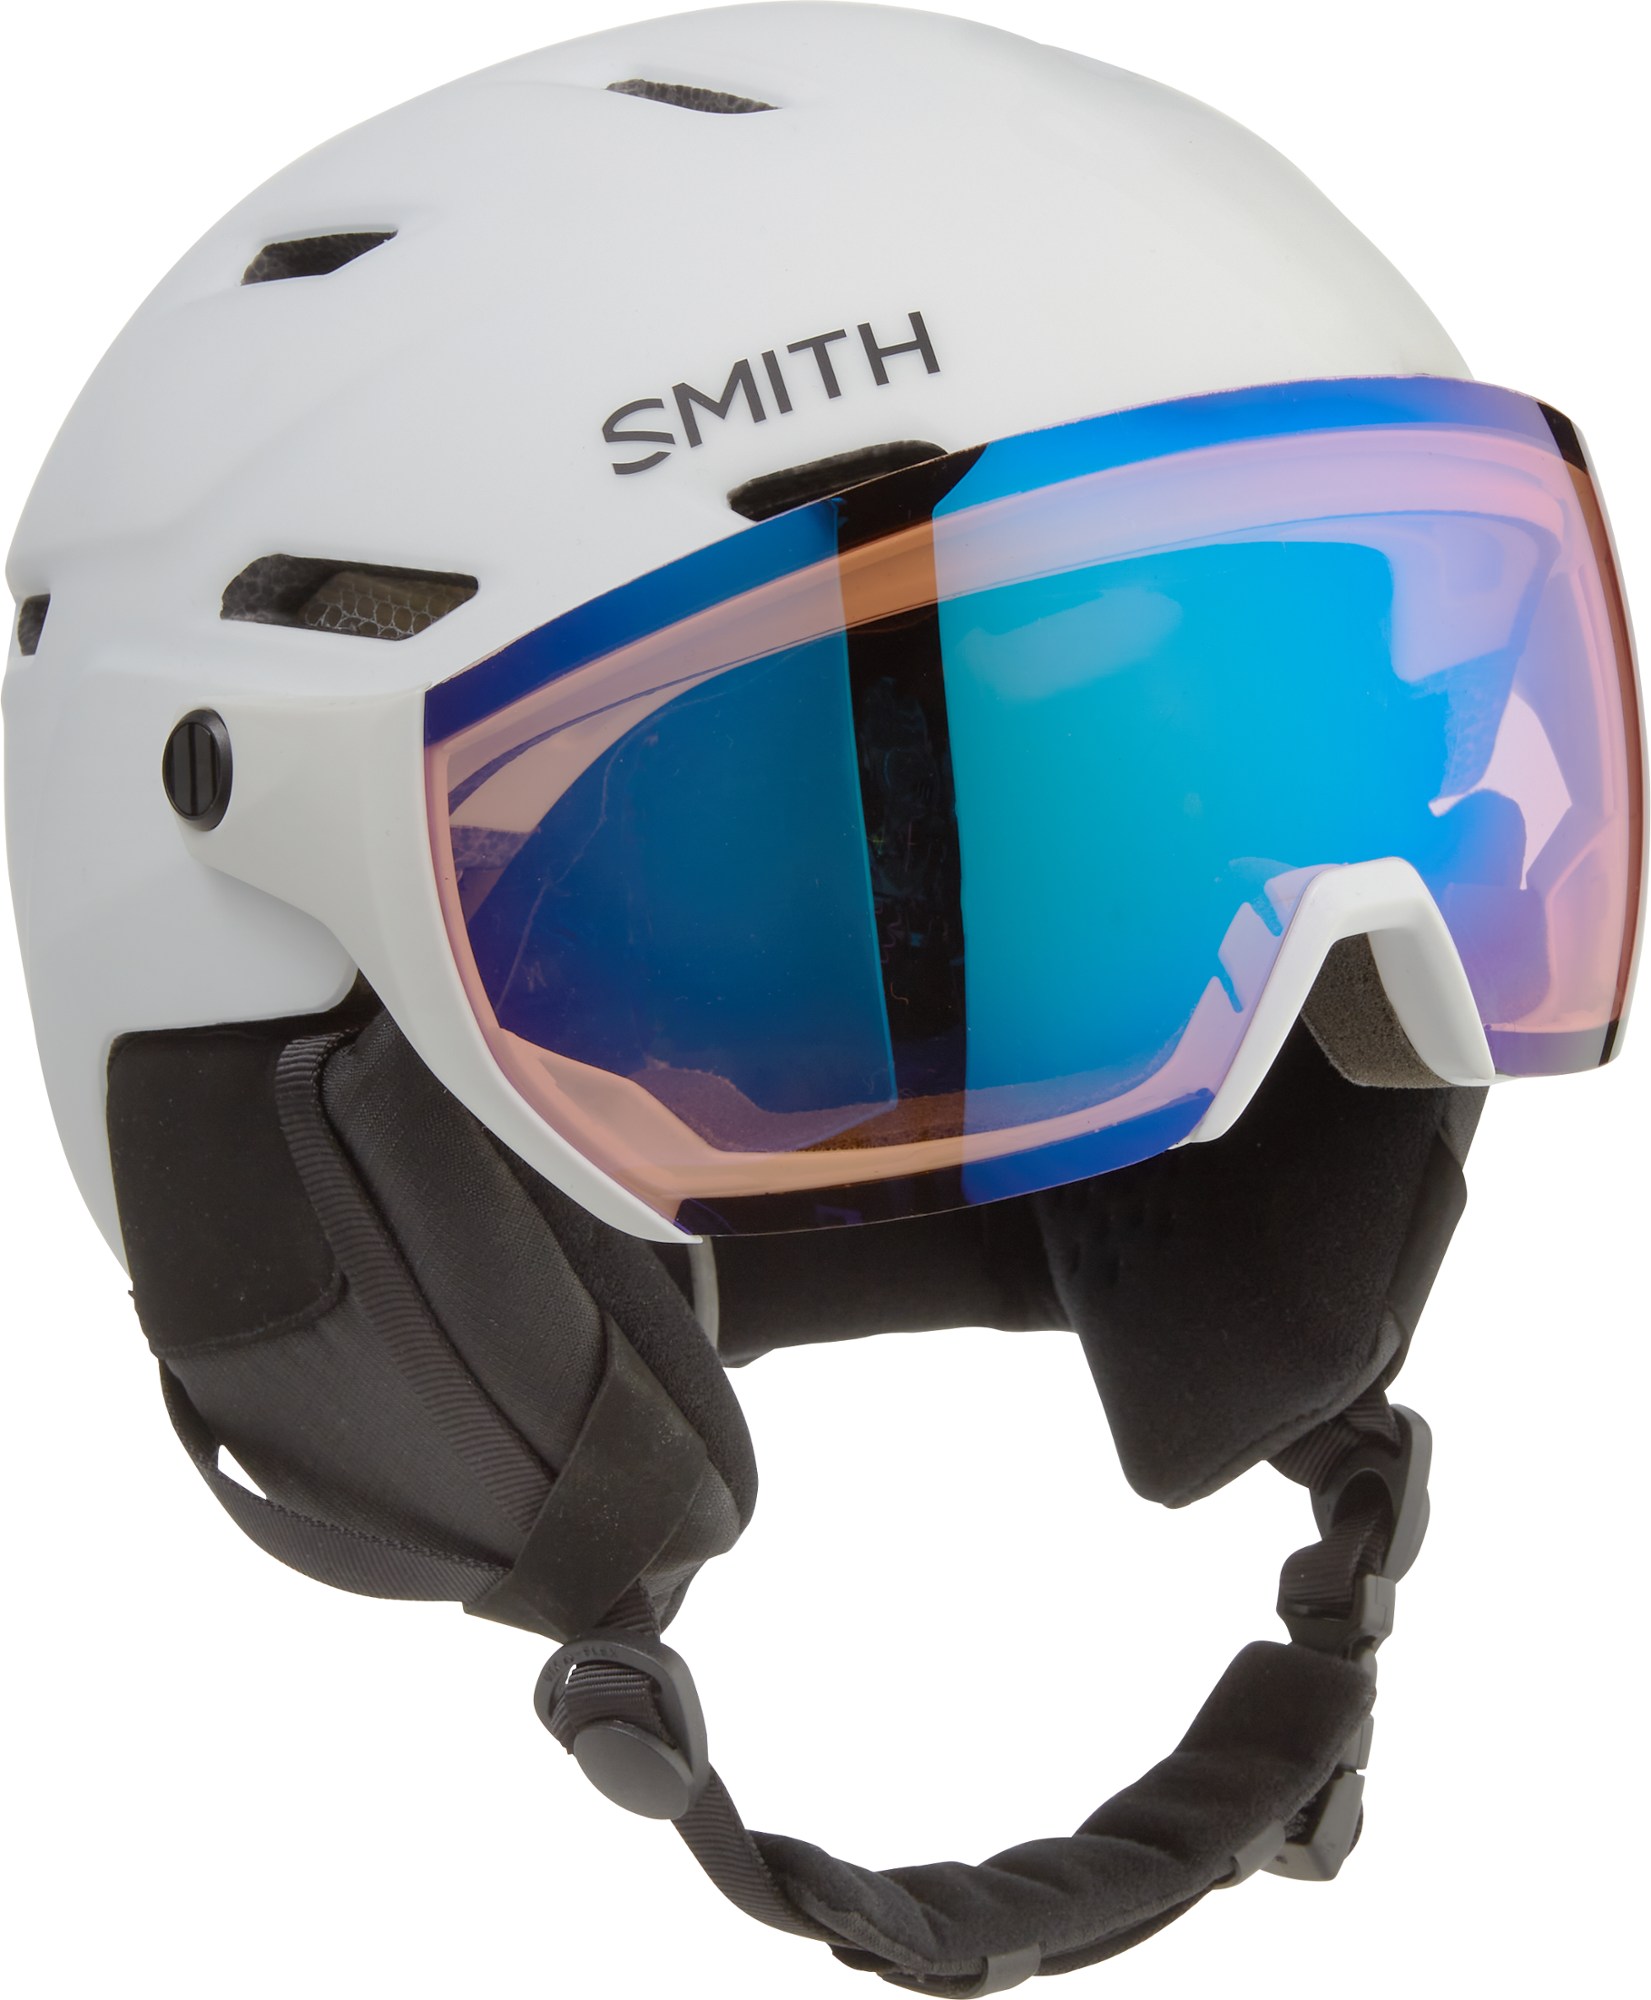 Фотохроматический снежный шлем Survey Mips Smith, белый